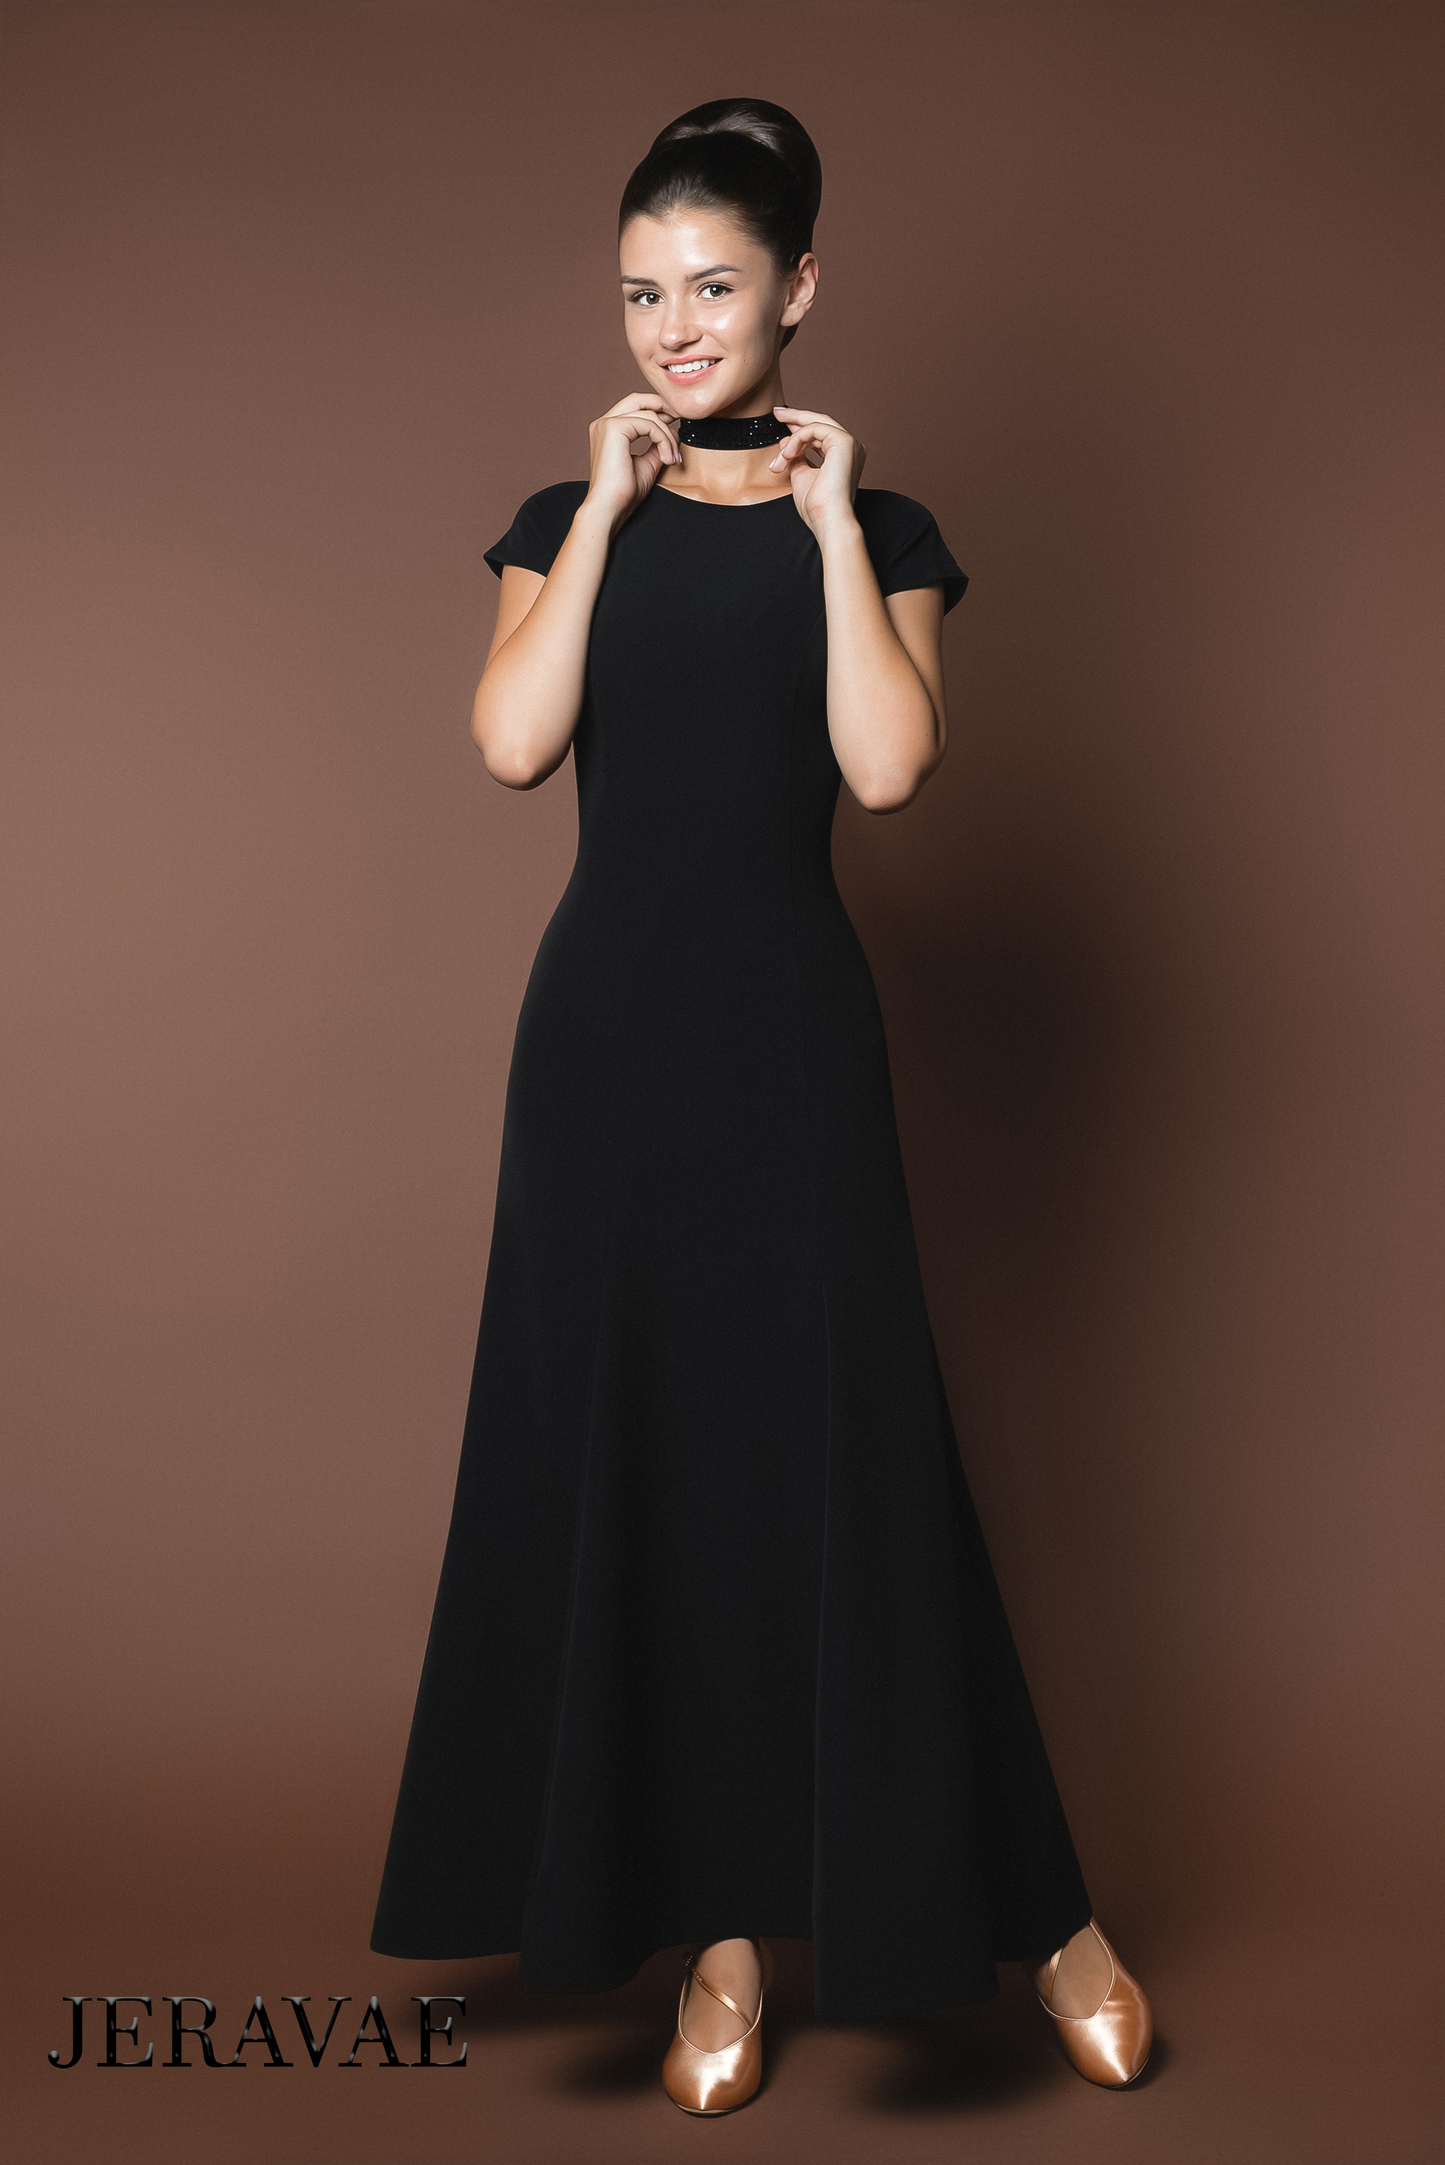 Sleek Black Ballroom Practice Dress with Short Sleeves and Wrapped Horsehair Hem PRA 617